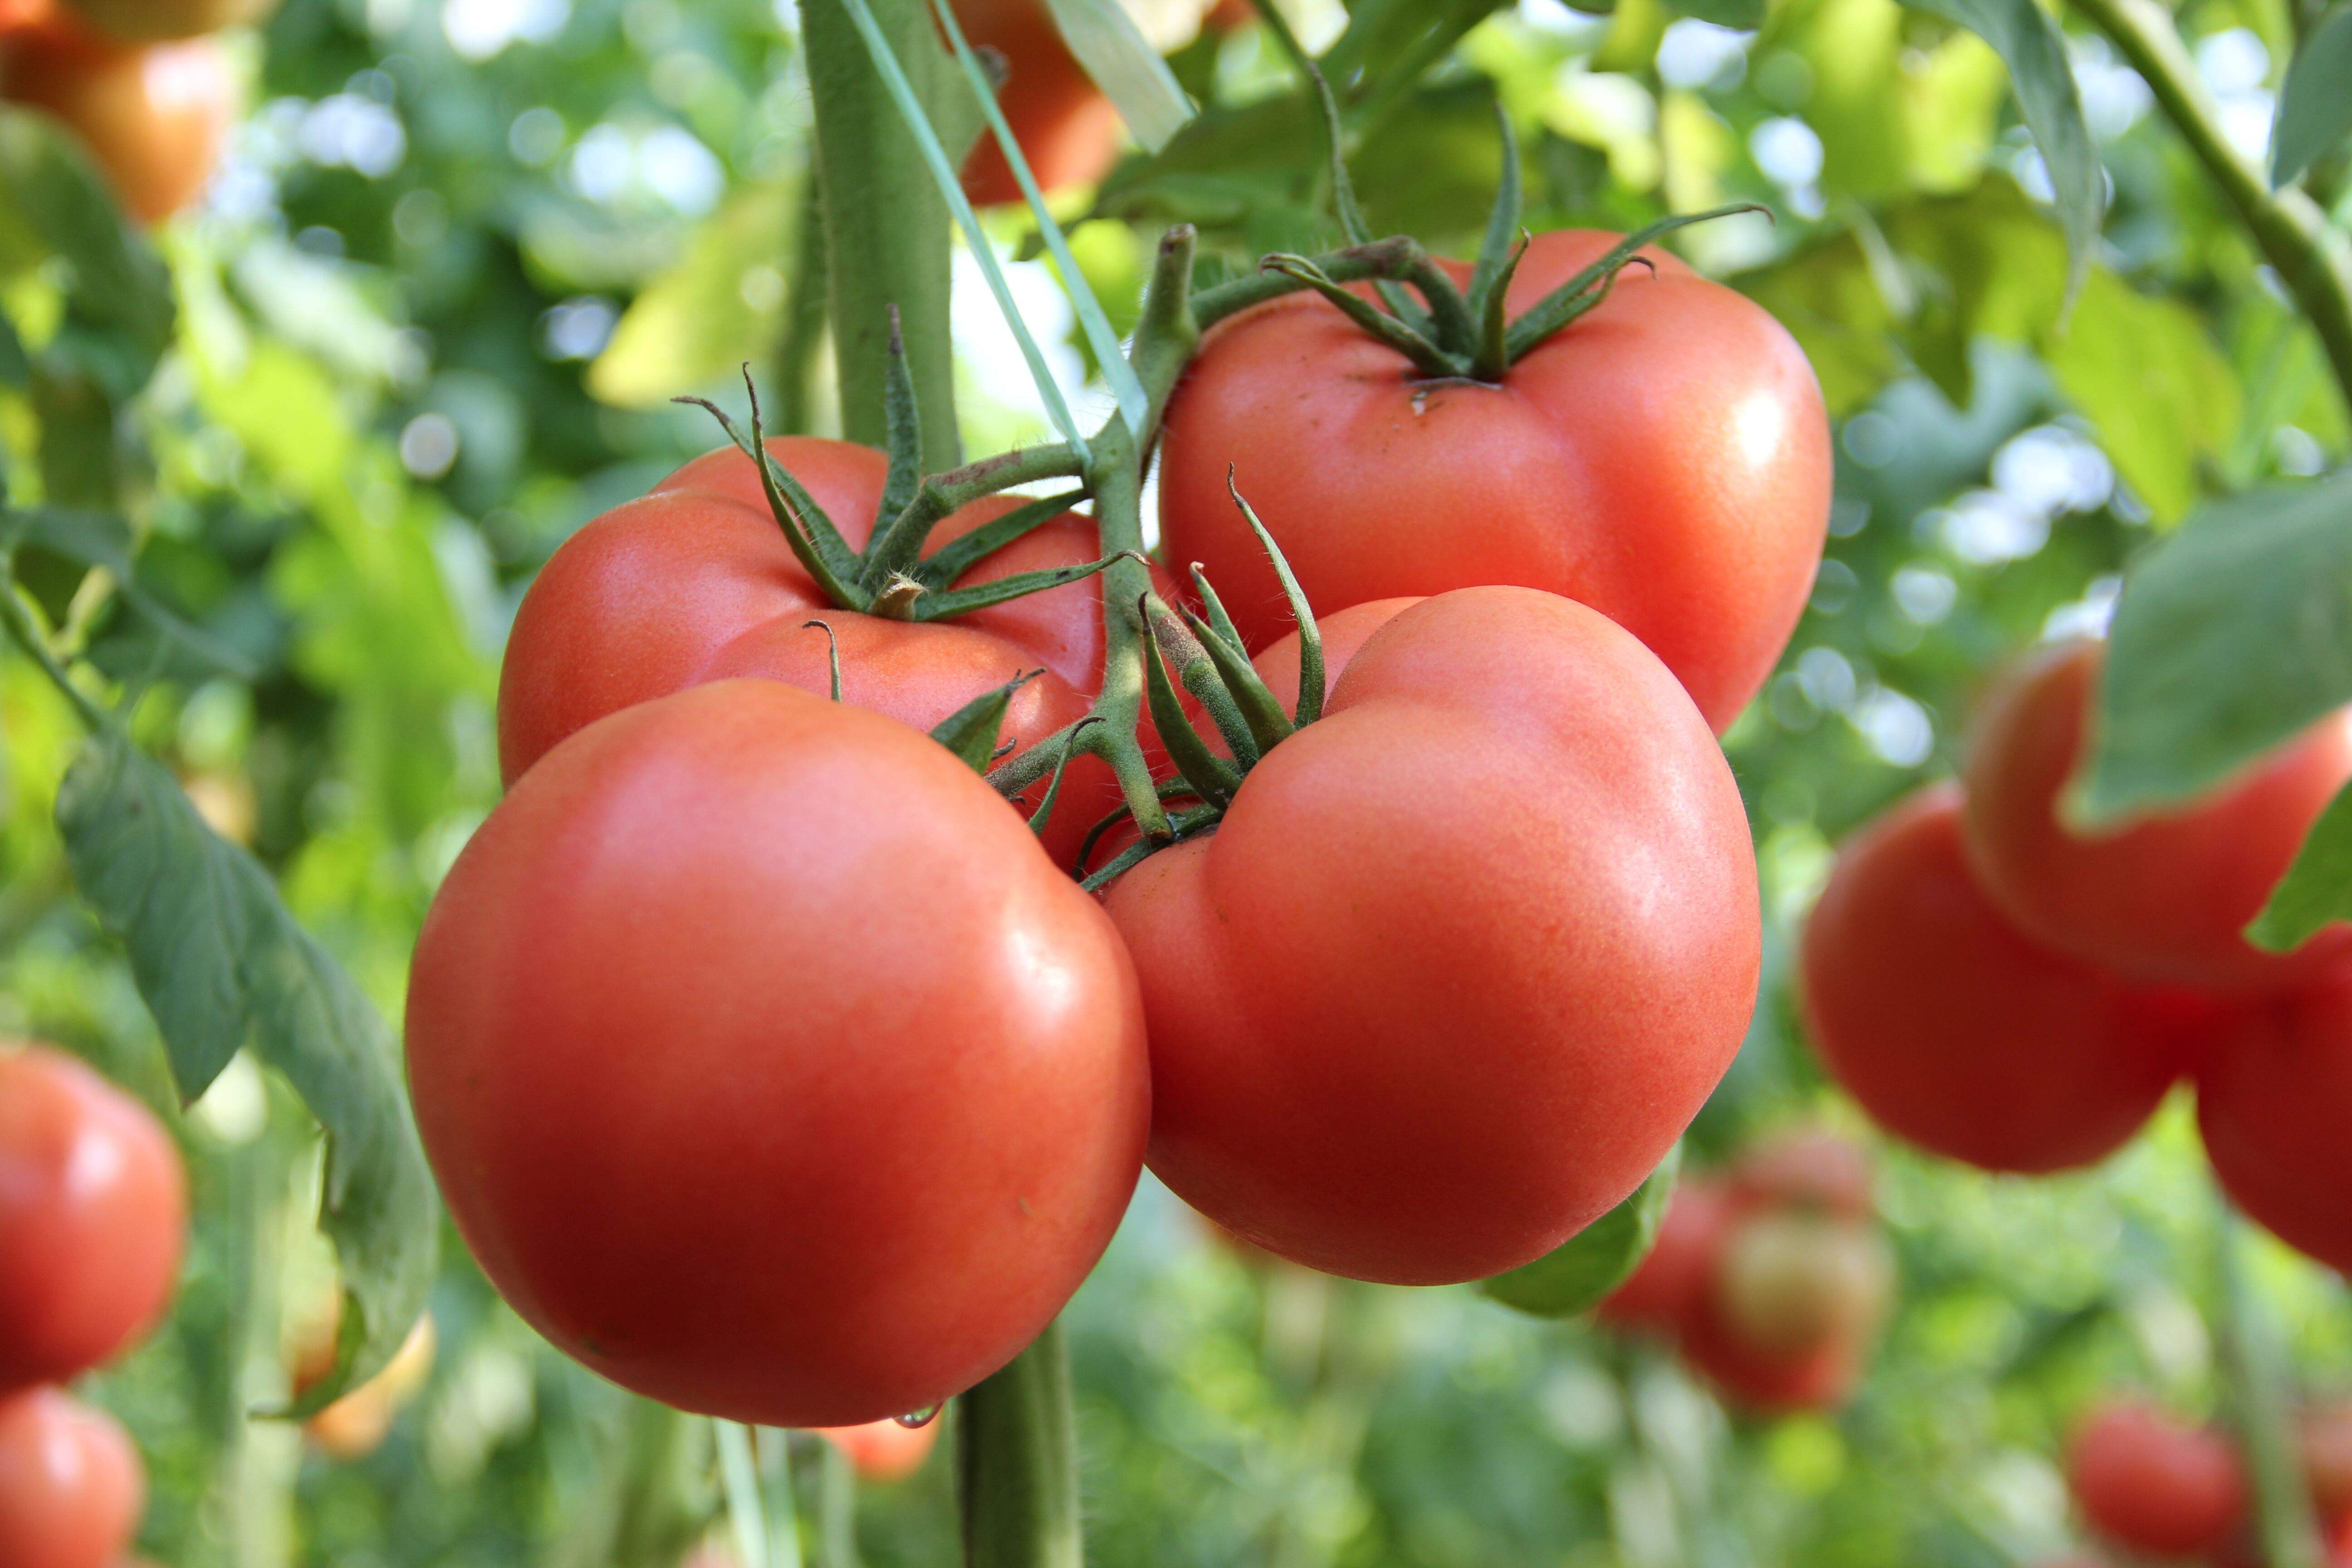 壳寡糖对番茄和韭菜中有机磷类农药降解的生理调控作用